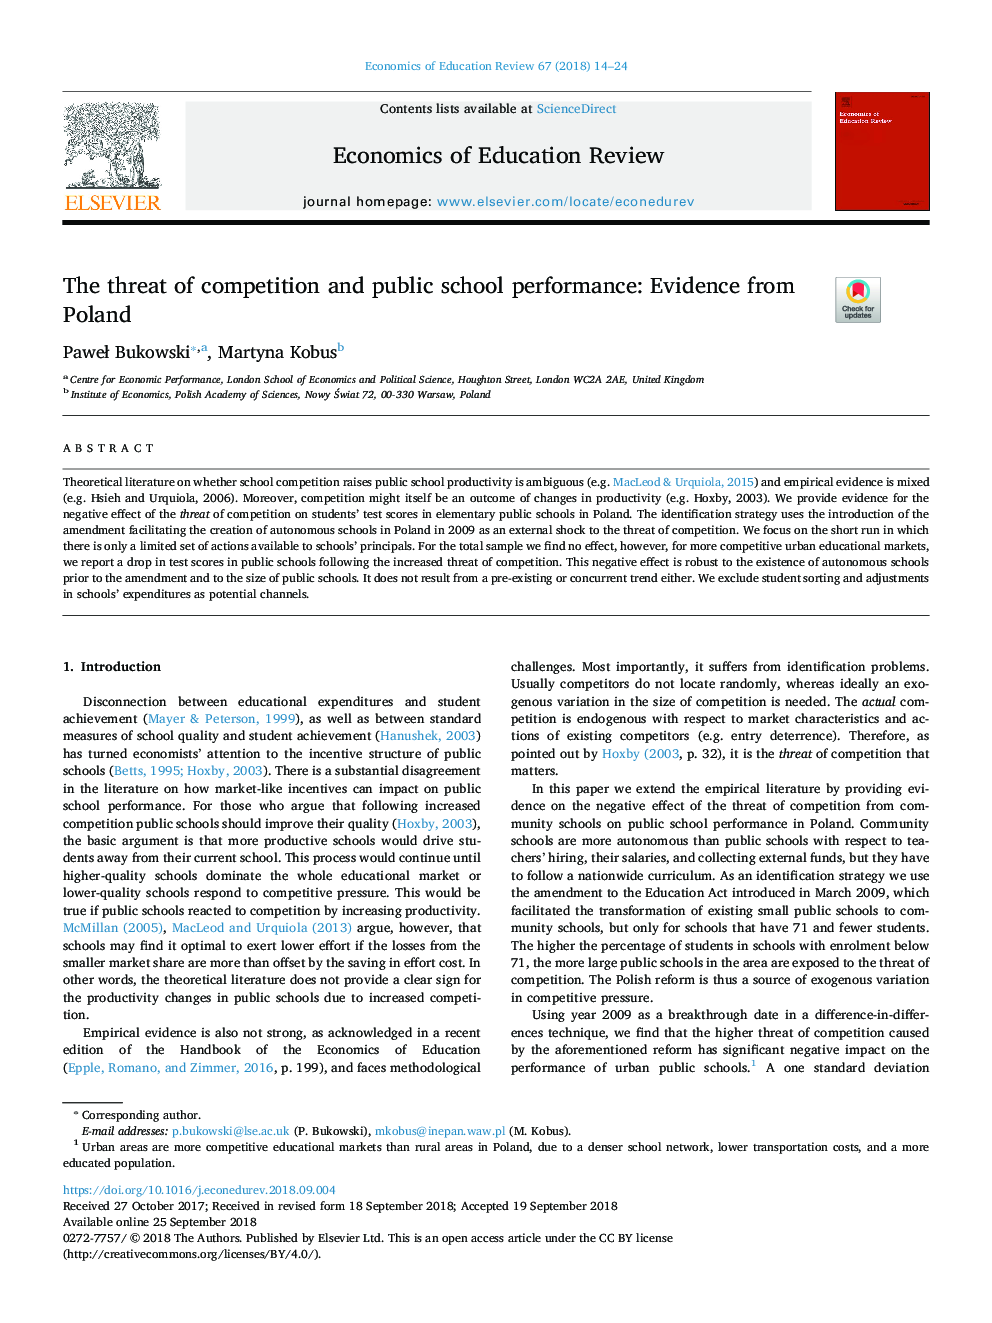 خطر رقابت و عملکرد مدرسه دولتی: شواهد از لهستان